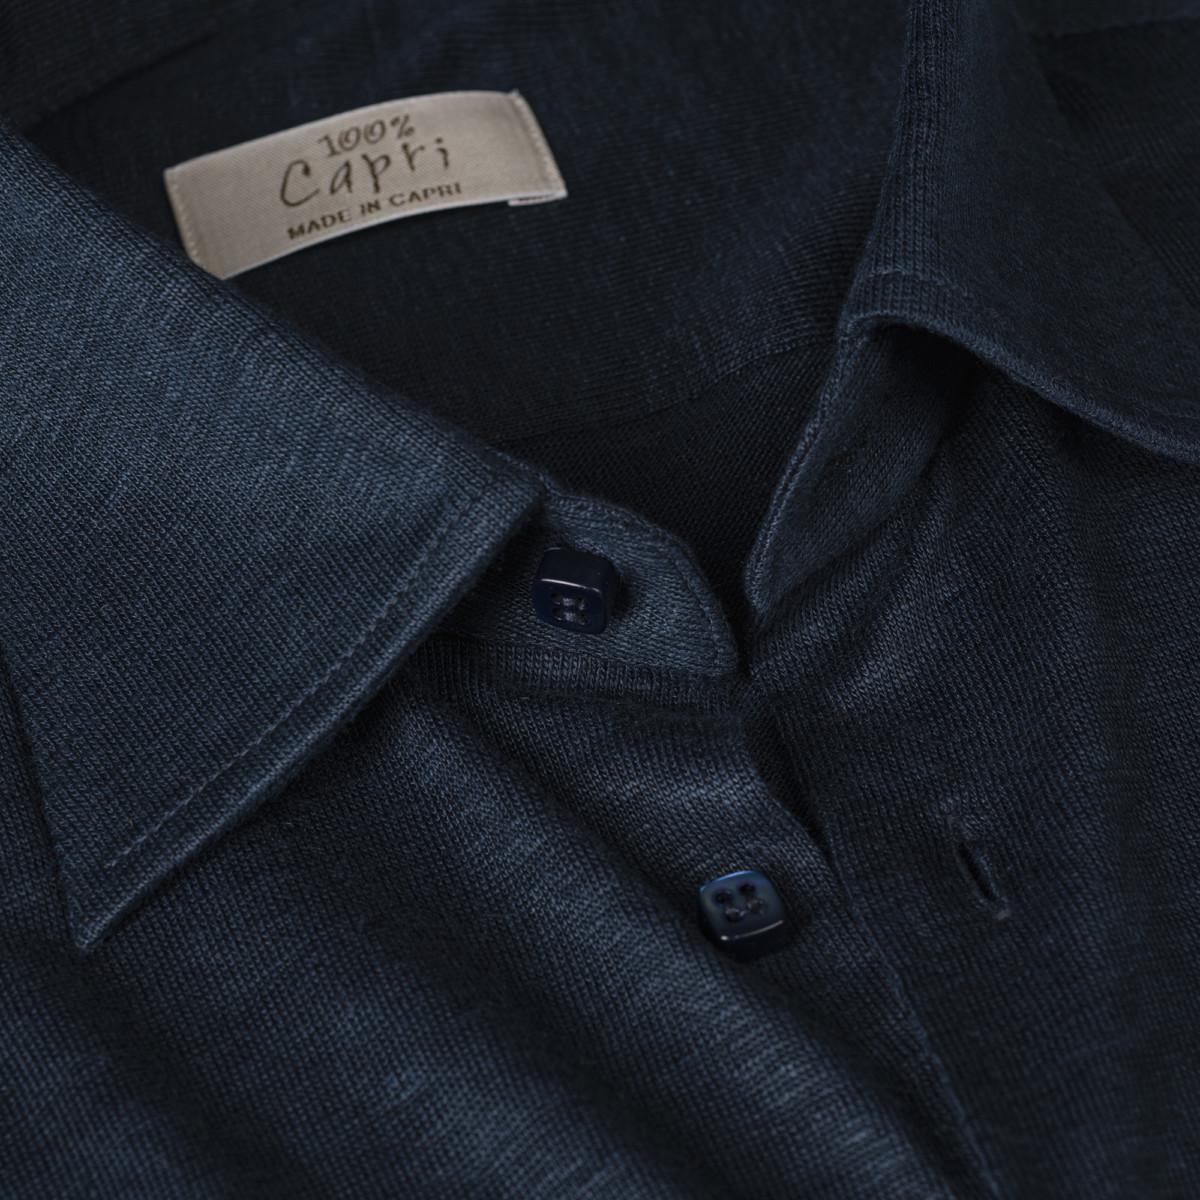 Camicia Long Sleeve blue details 100% Capri